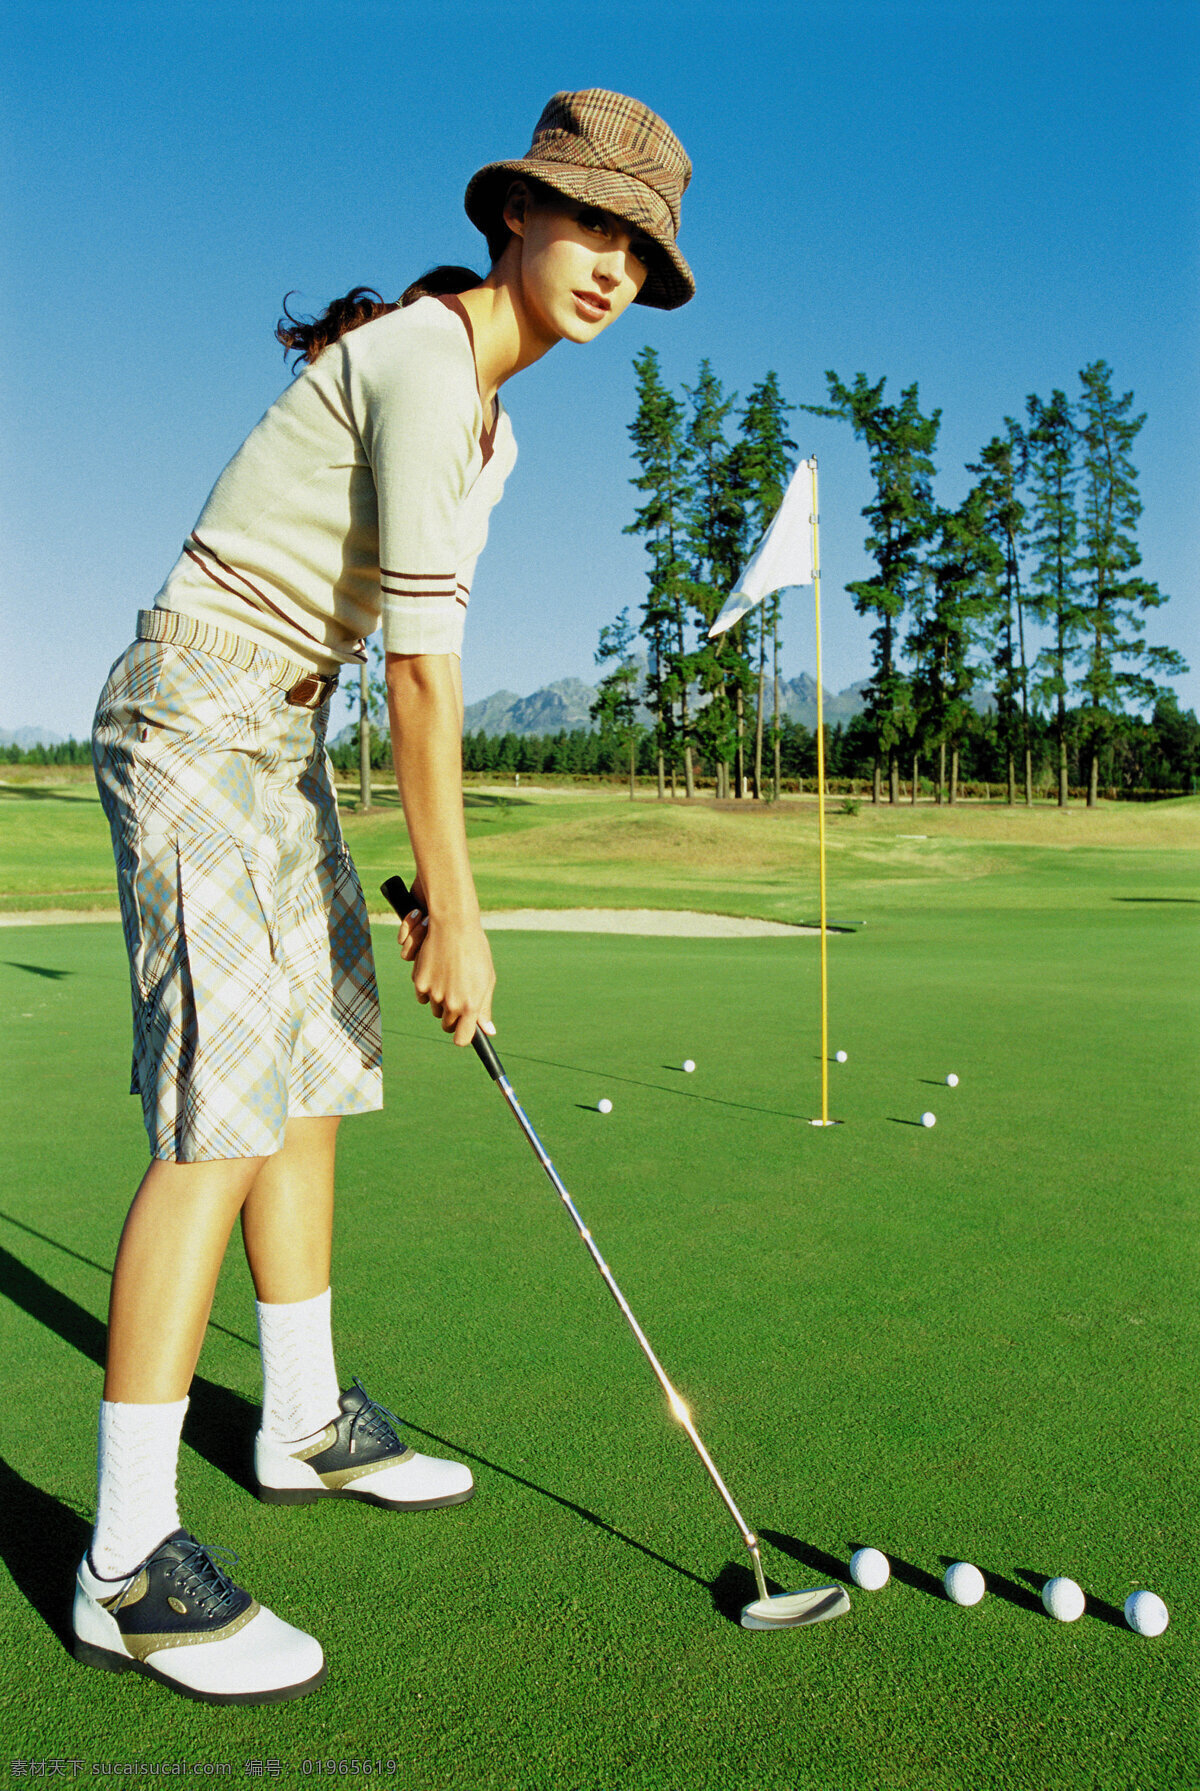 休闲 美女 高尔夫 美女打高尔夫 高尔夫球杆 草地 蓝天 生活百科 体育用品 摄影图库